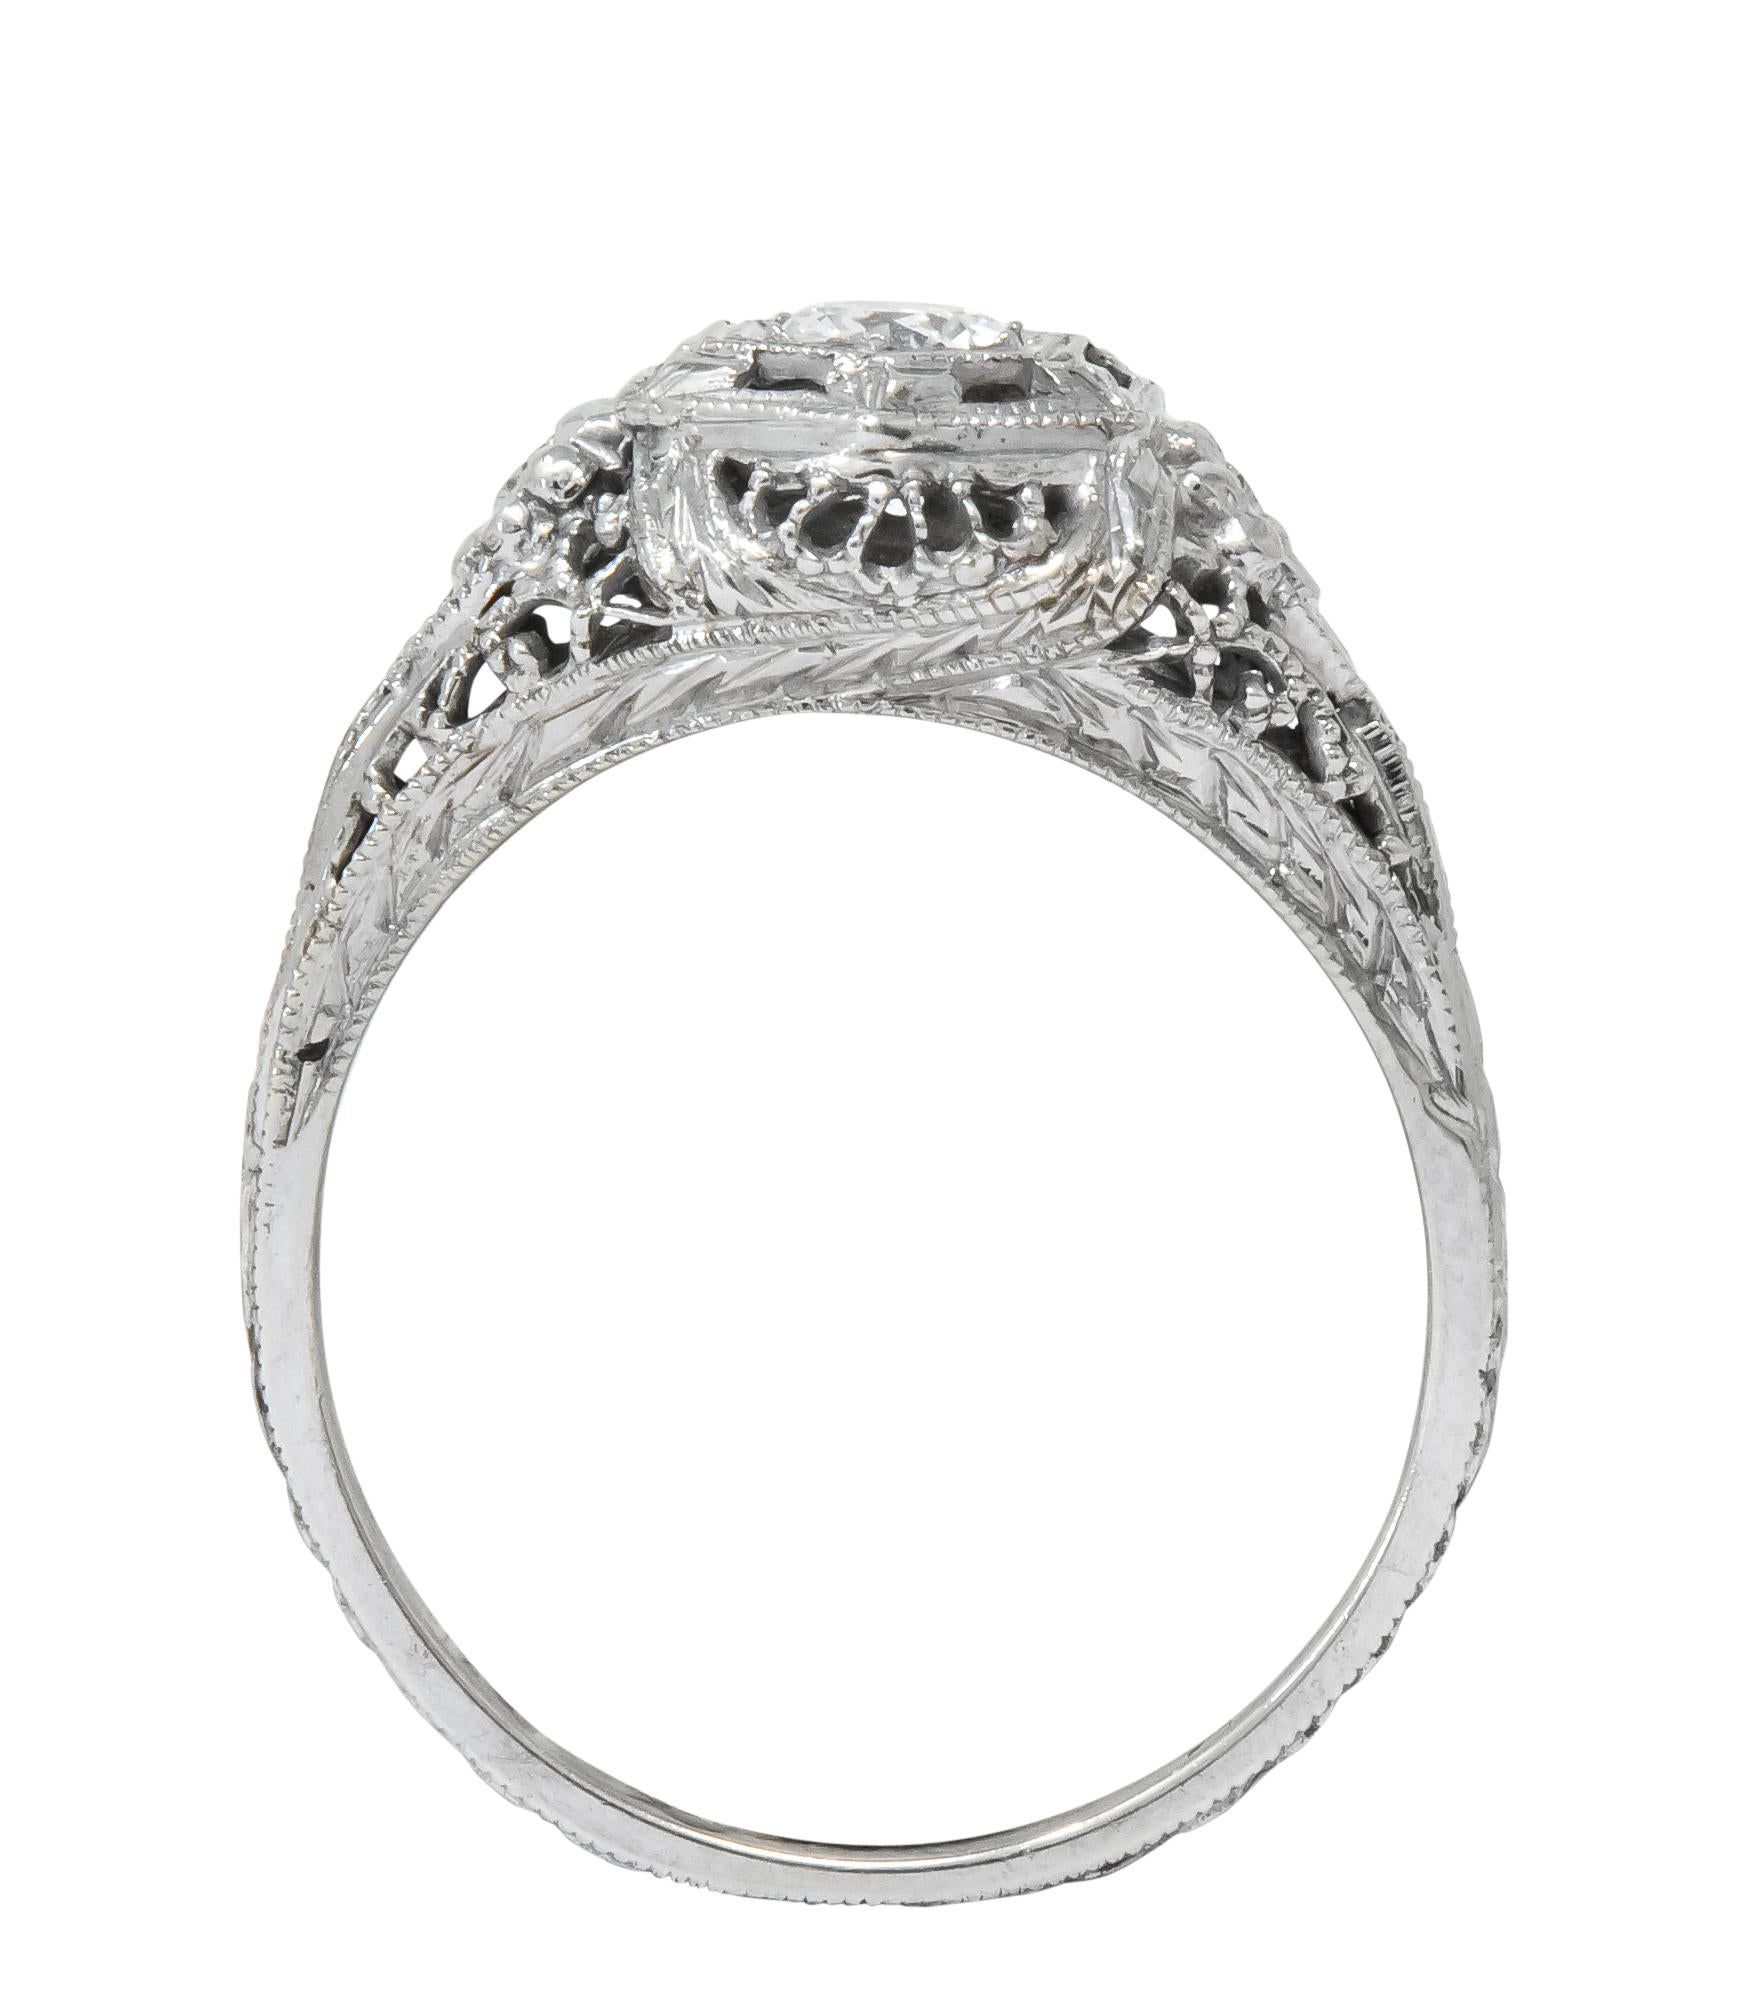 Edwardian Old European Cut Diamond 18 Karat White Gold Engagement Ring 3